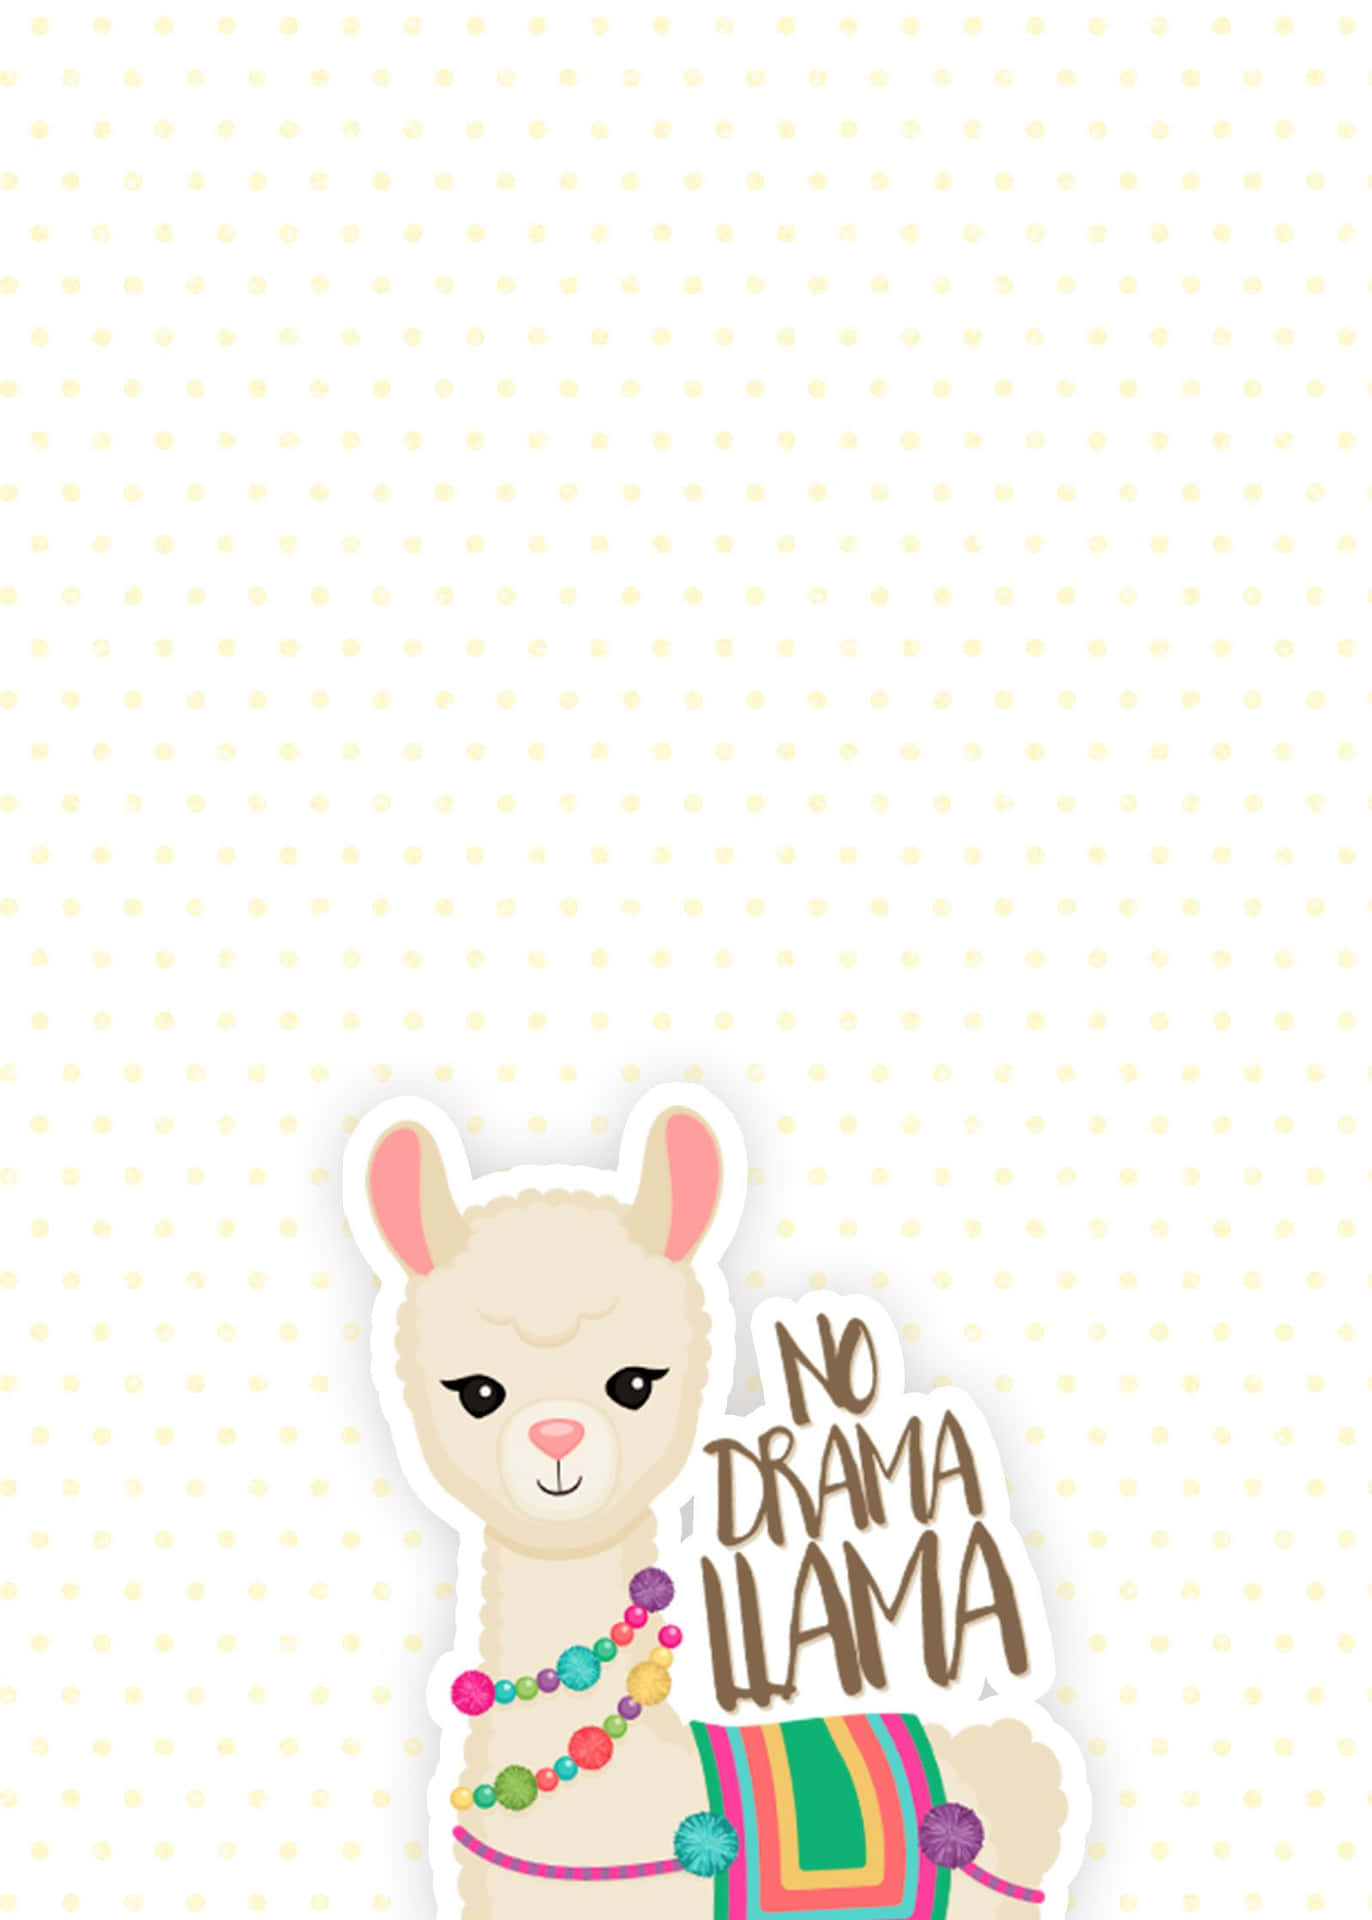 Cute Llama Sticker Wallpaper